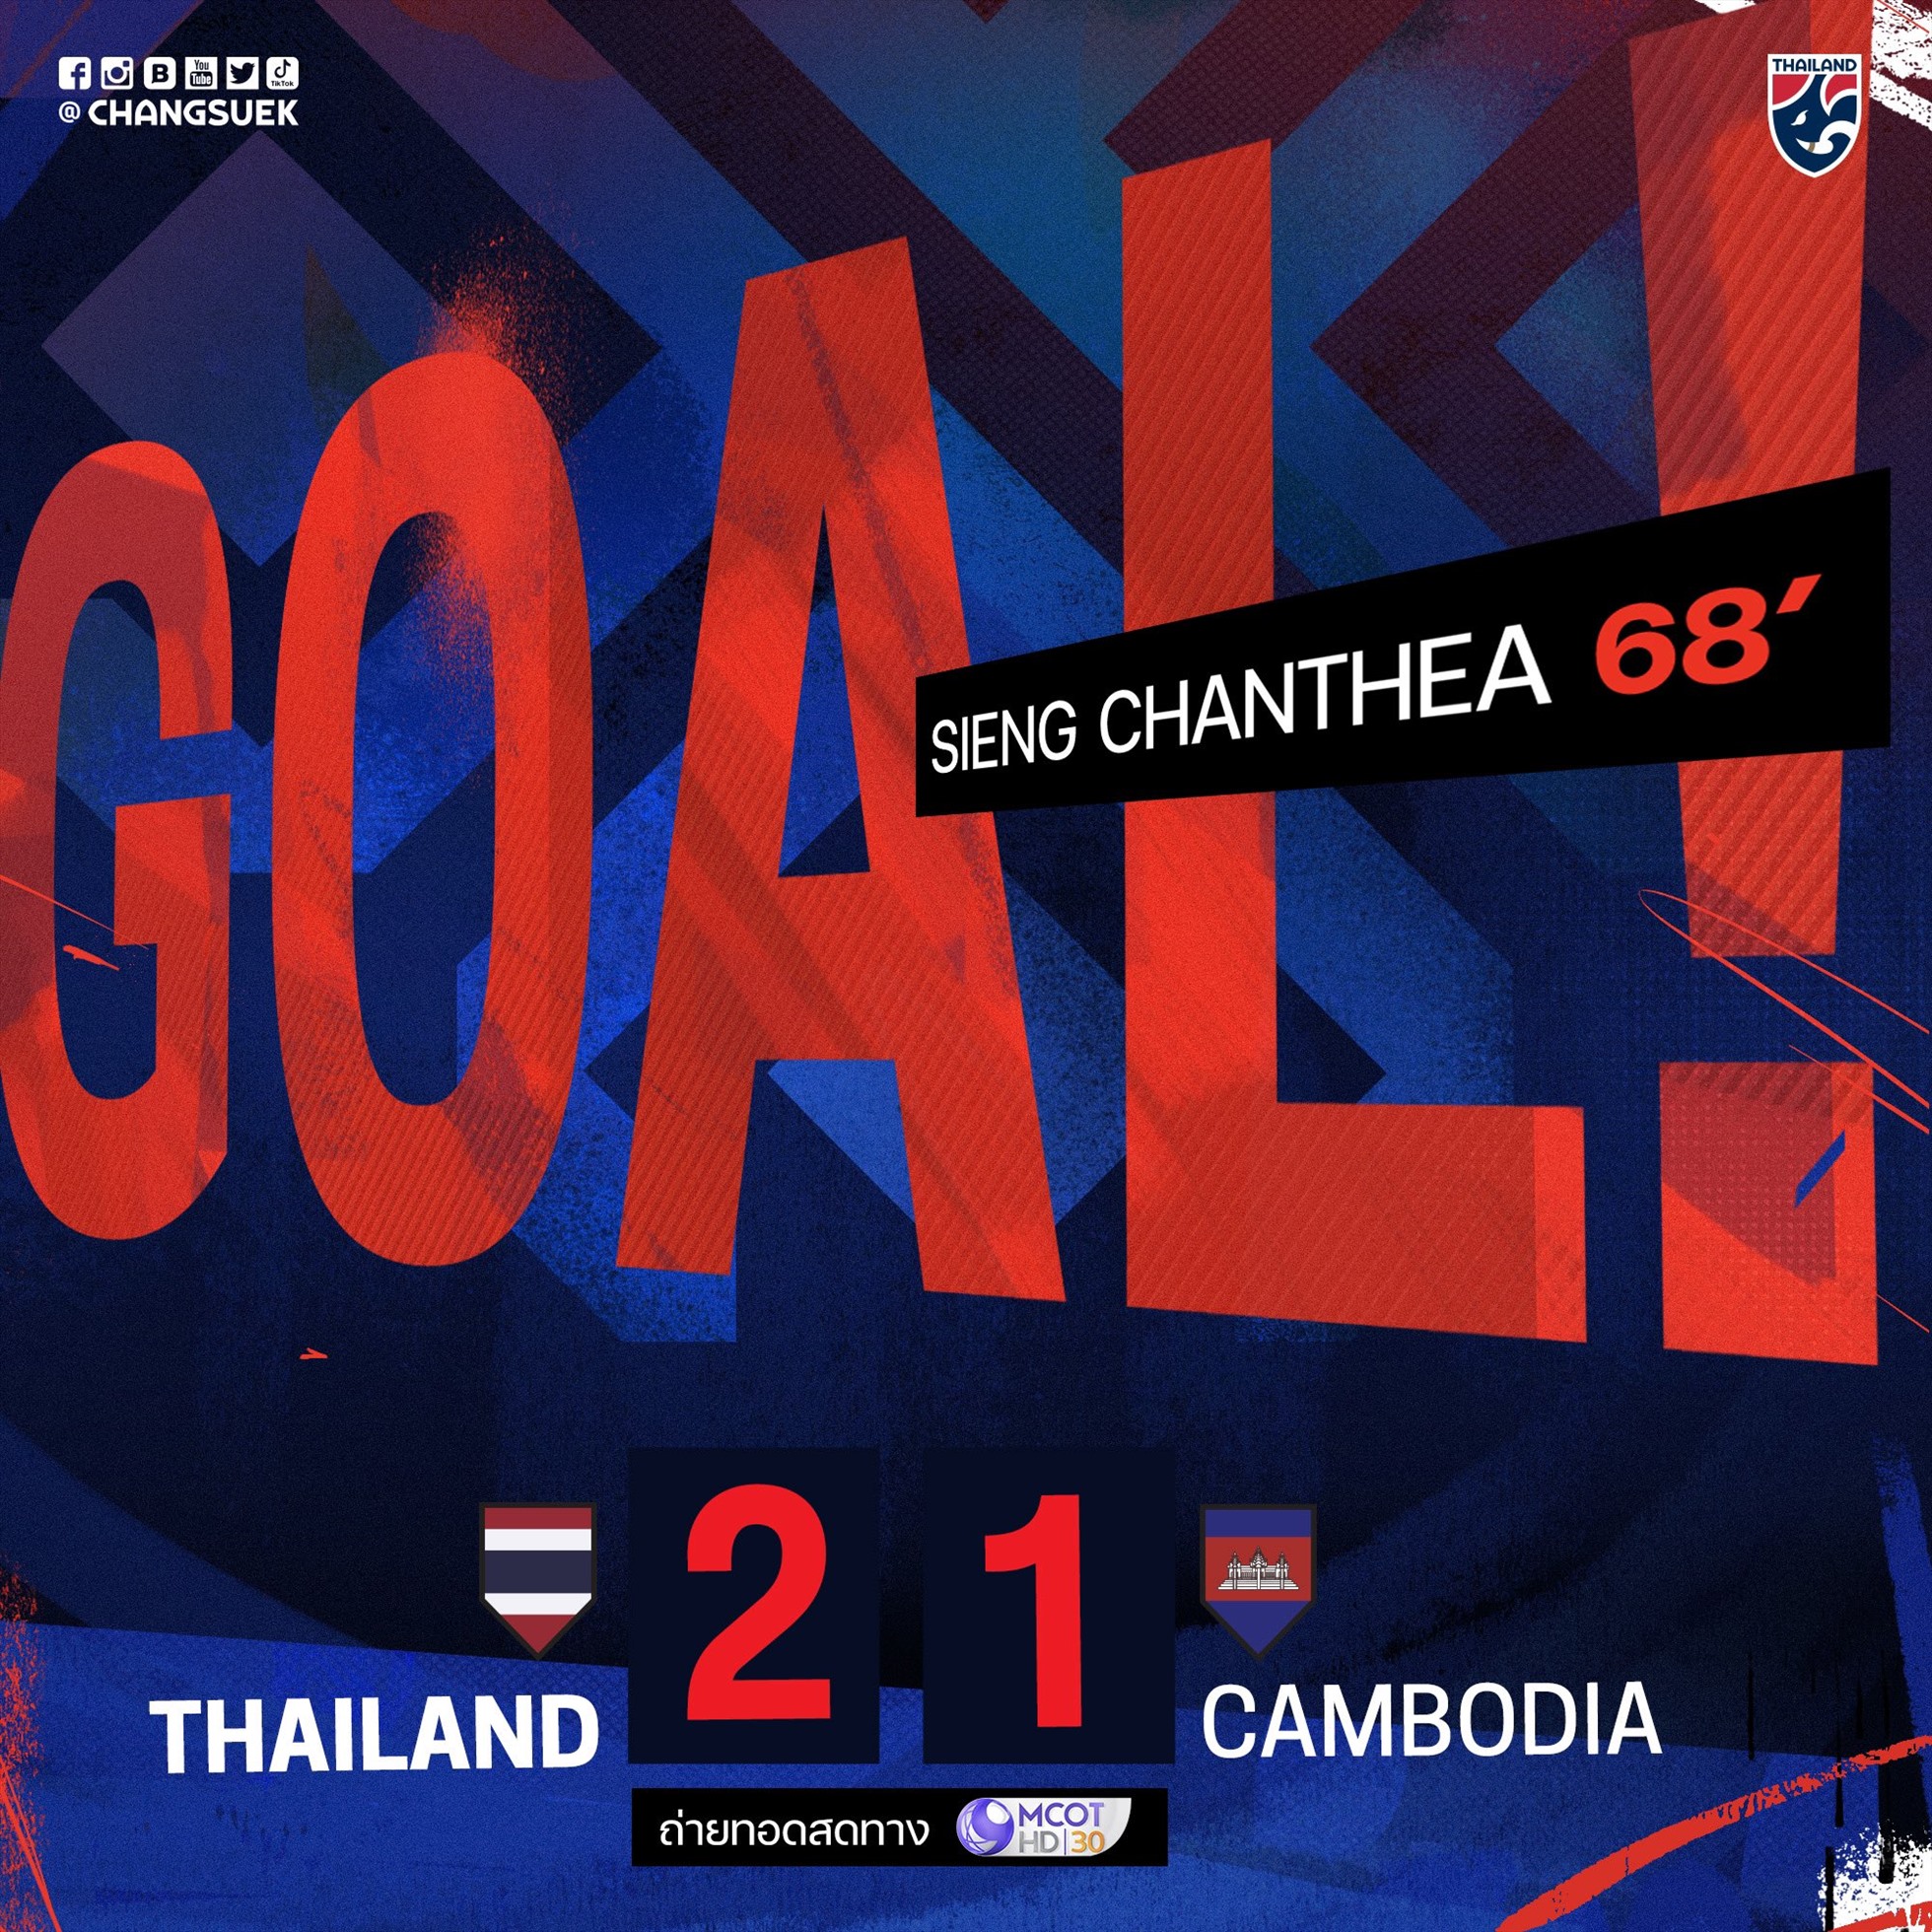 Bàn thắng của tuyển Campuchia đang tạm đẩy tuyển Thái Lan xuống thứ hai. Ảnh: Changseuk